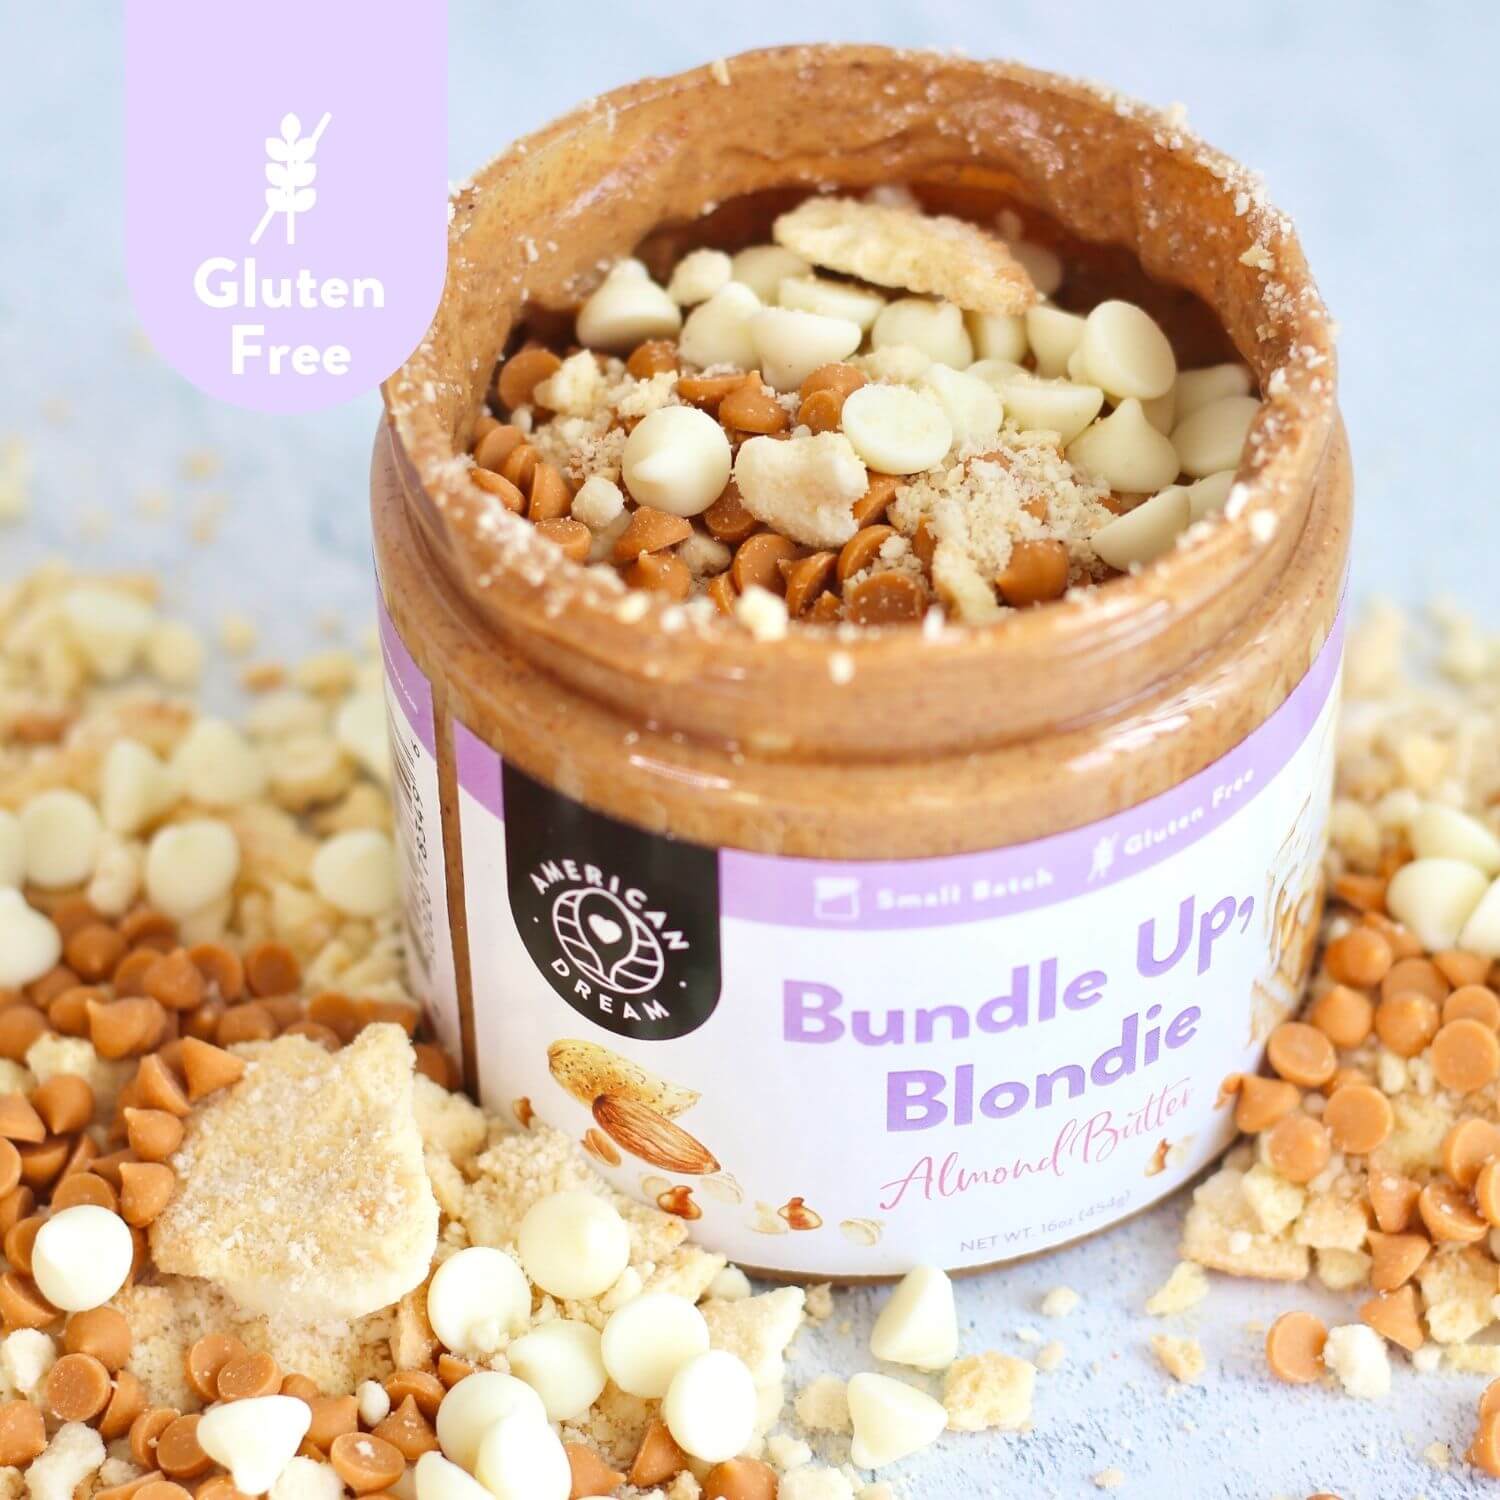 Gluten-Free Bundle Up Blondie Almond Butter